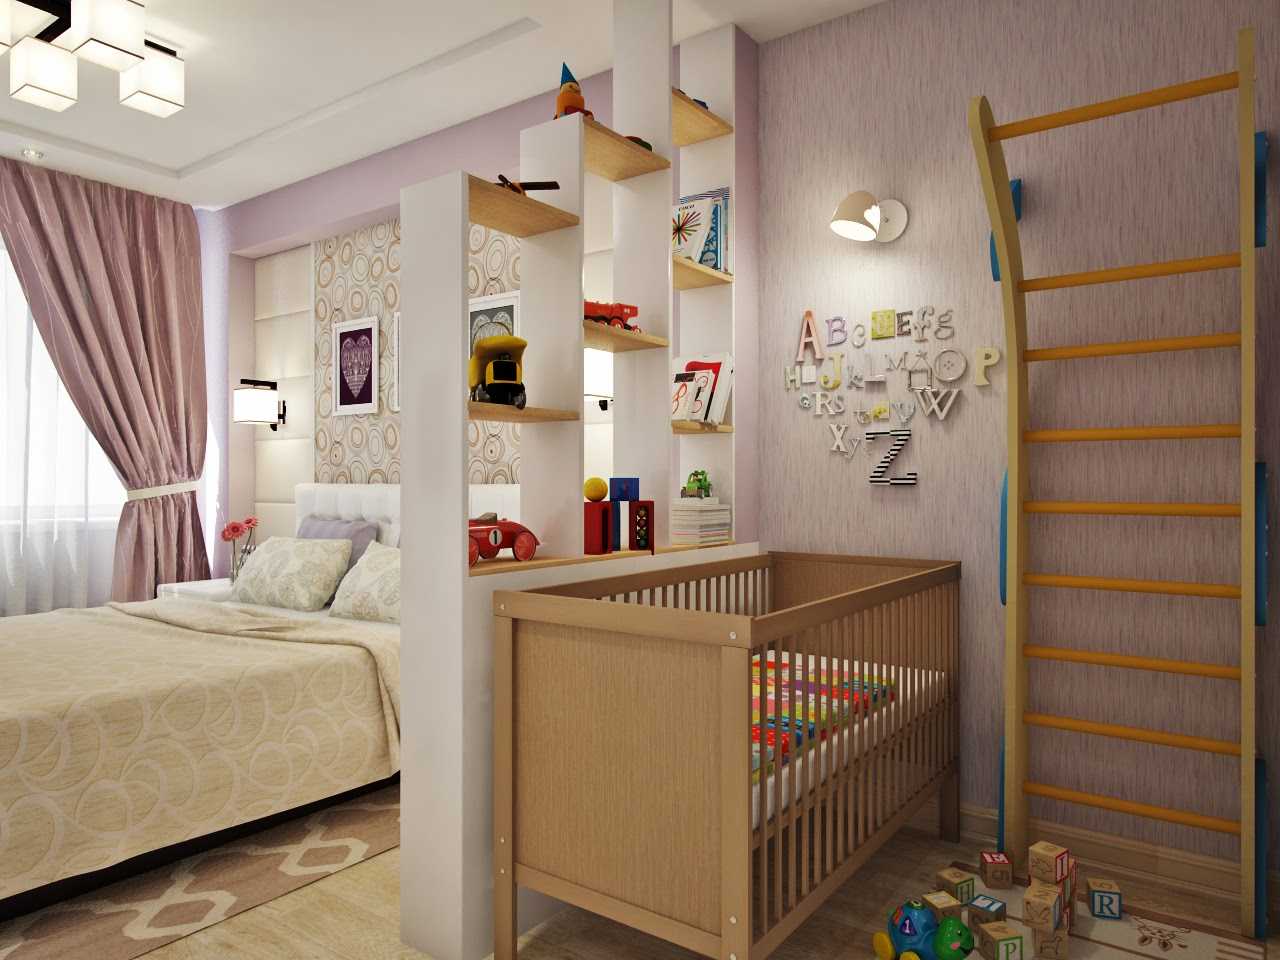 Гостиная и детская в одной комнате: как разделить на две зоны, зонирование